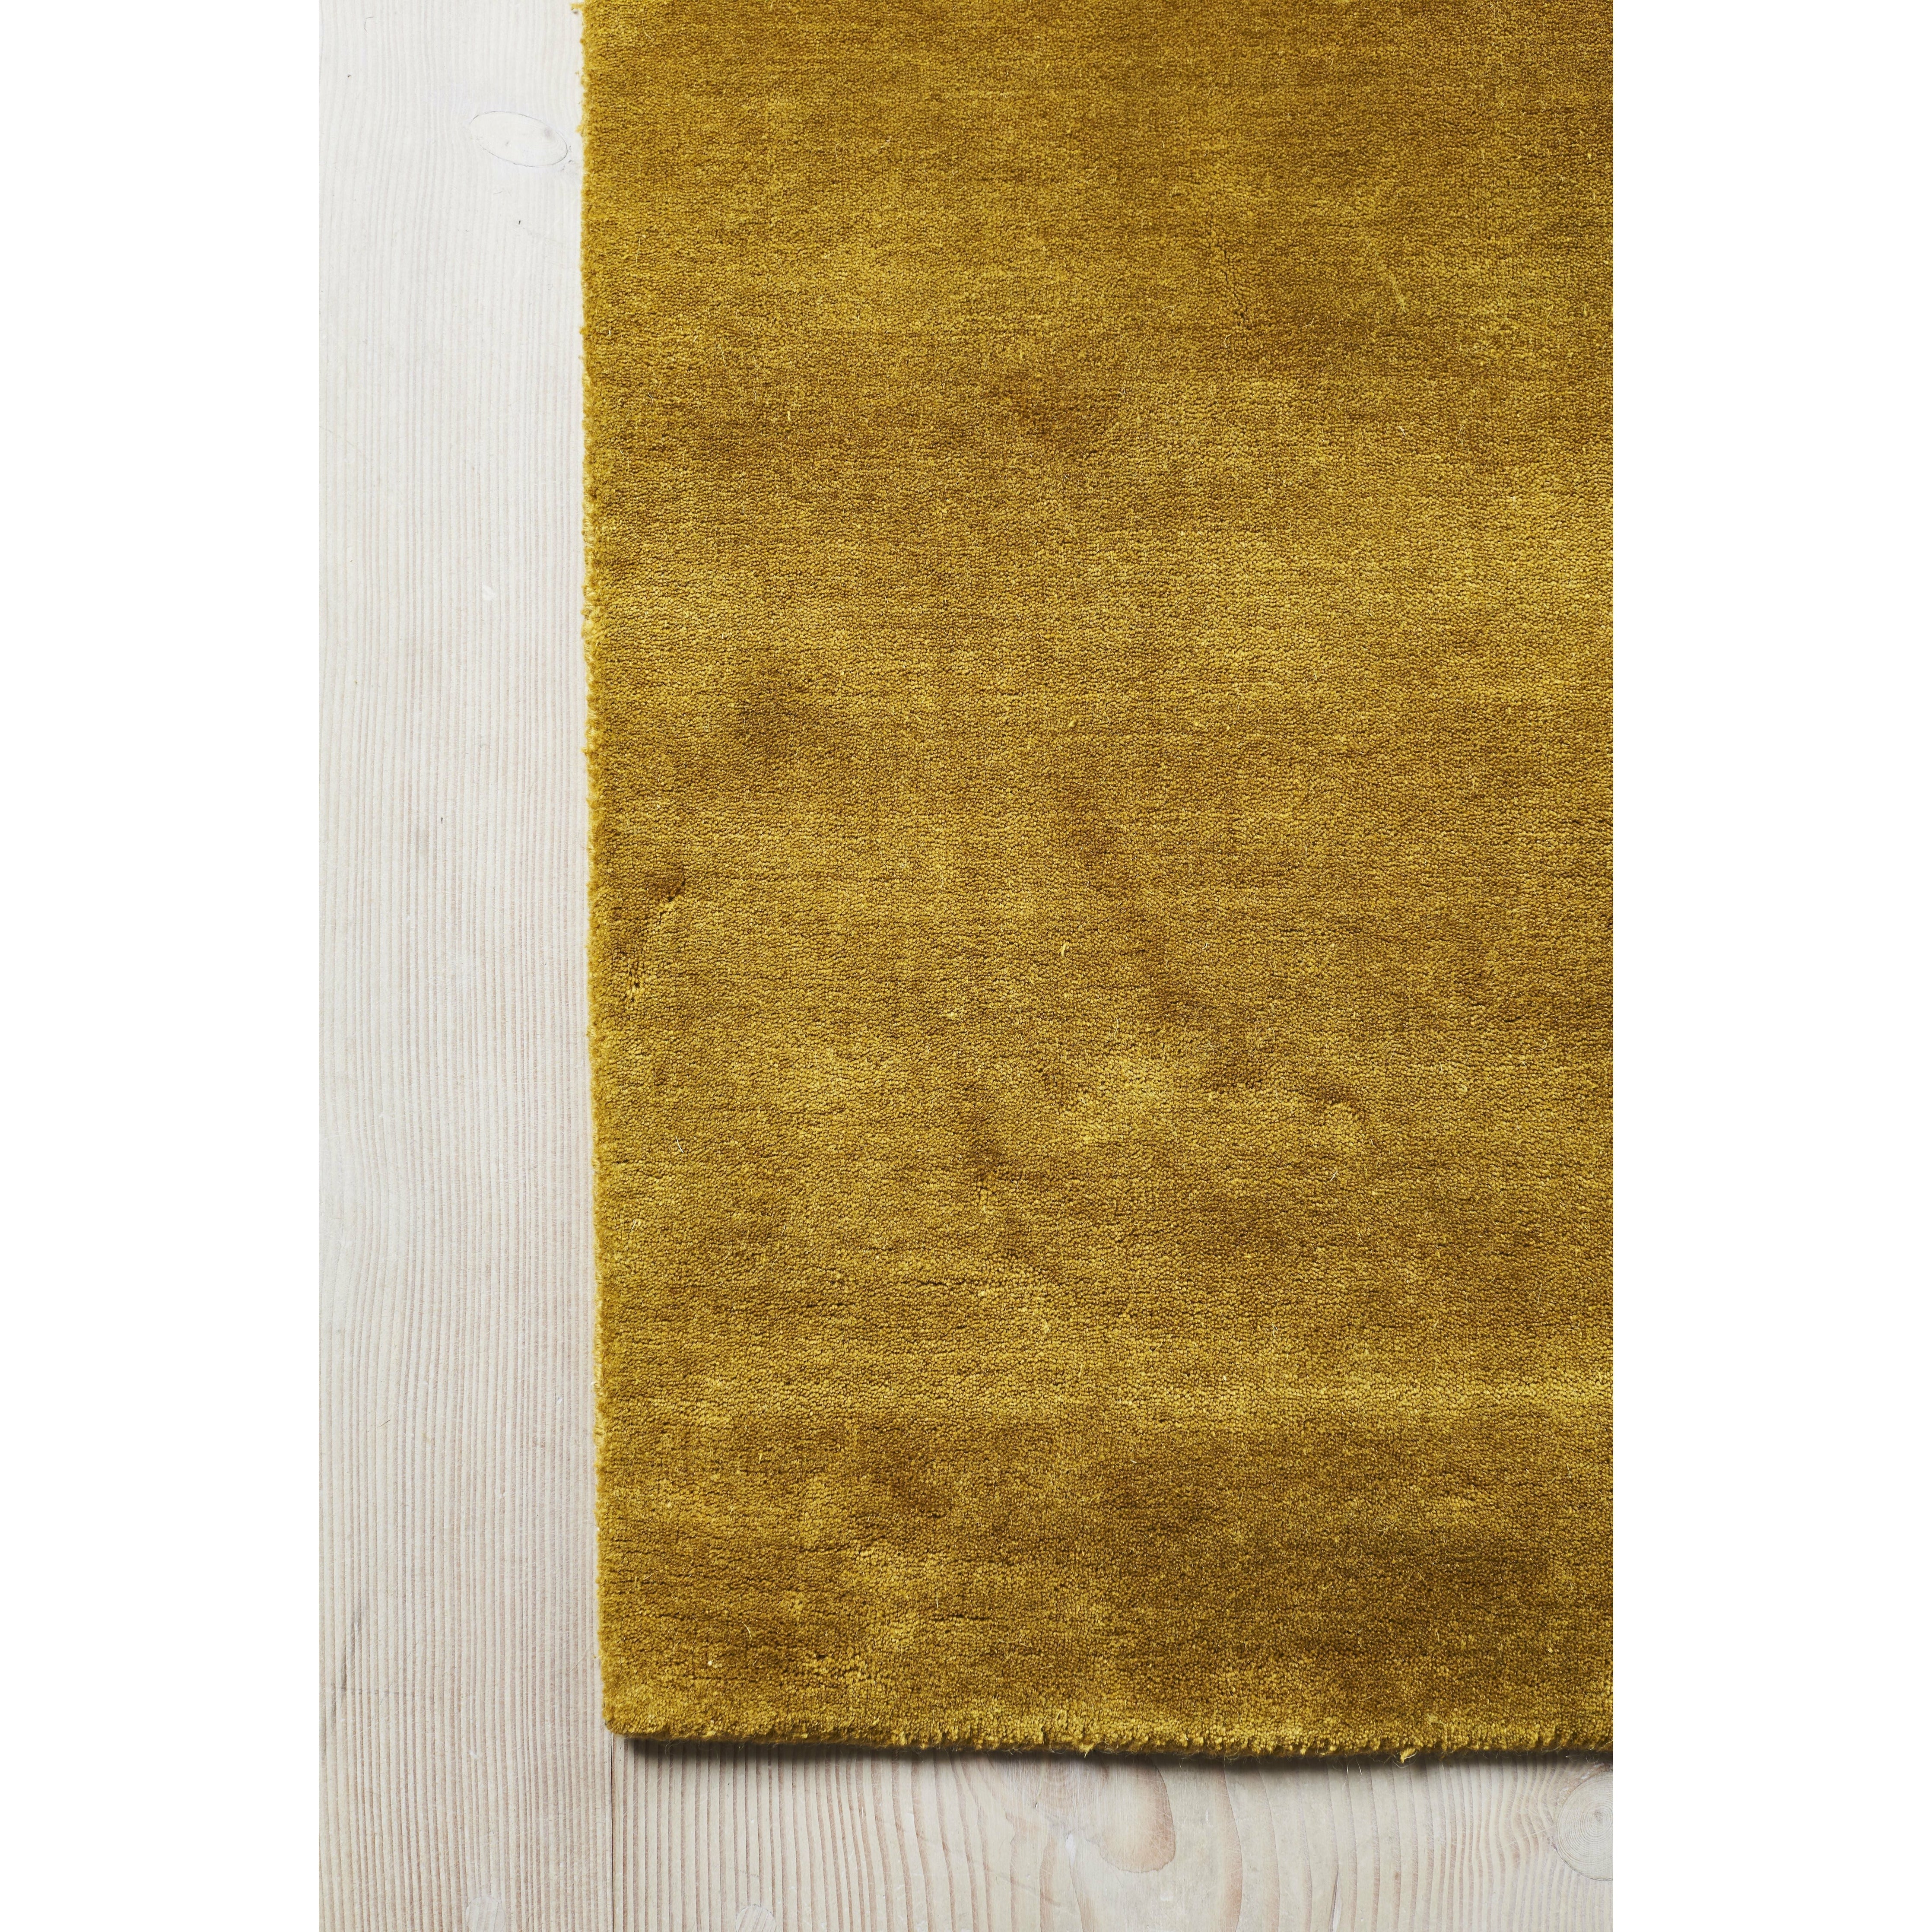 Massimo Jorden bambus tæppe kinesisk gul, 140x200 cm